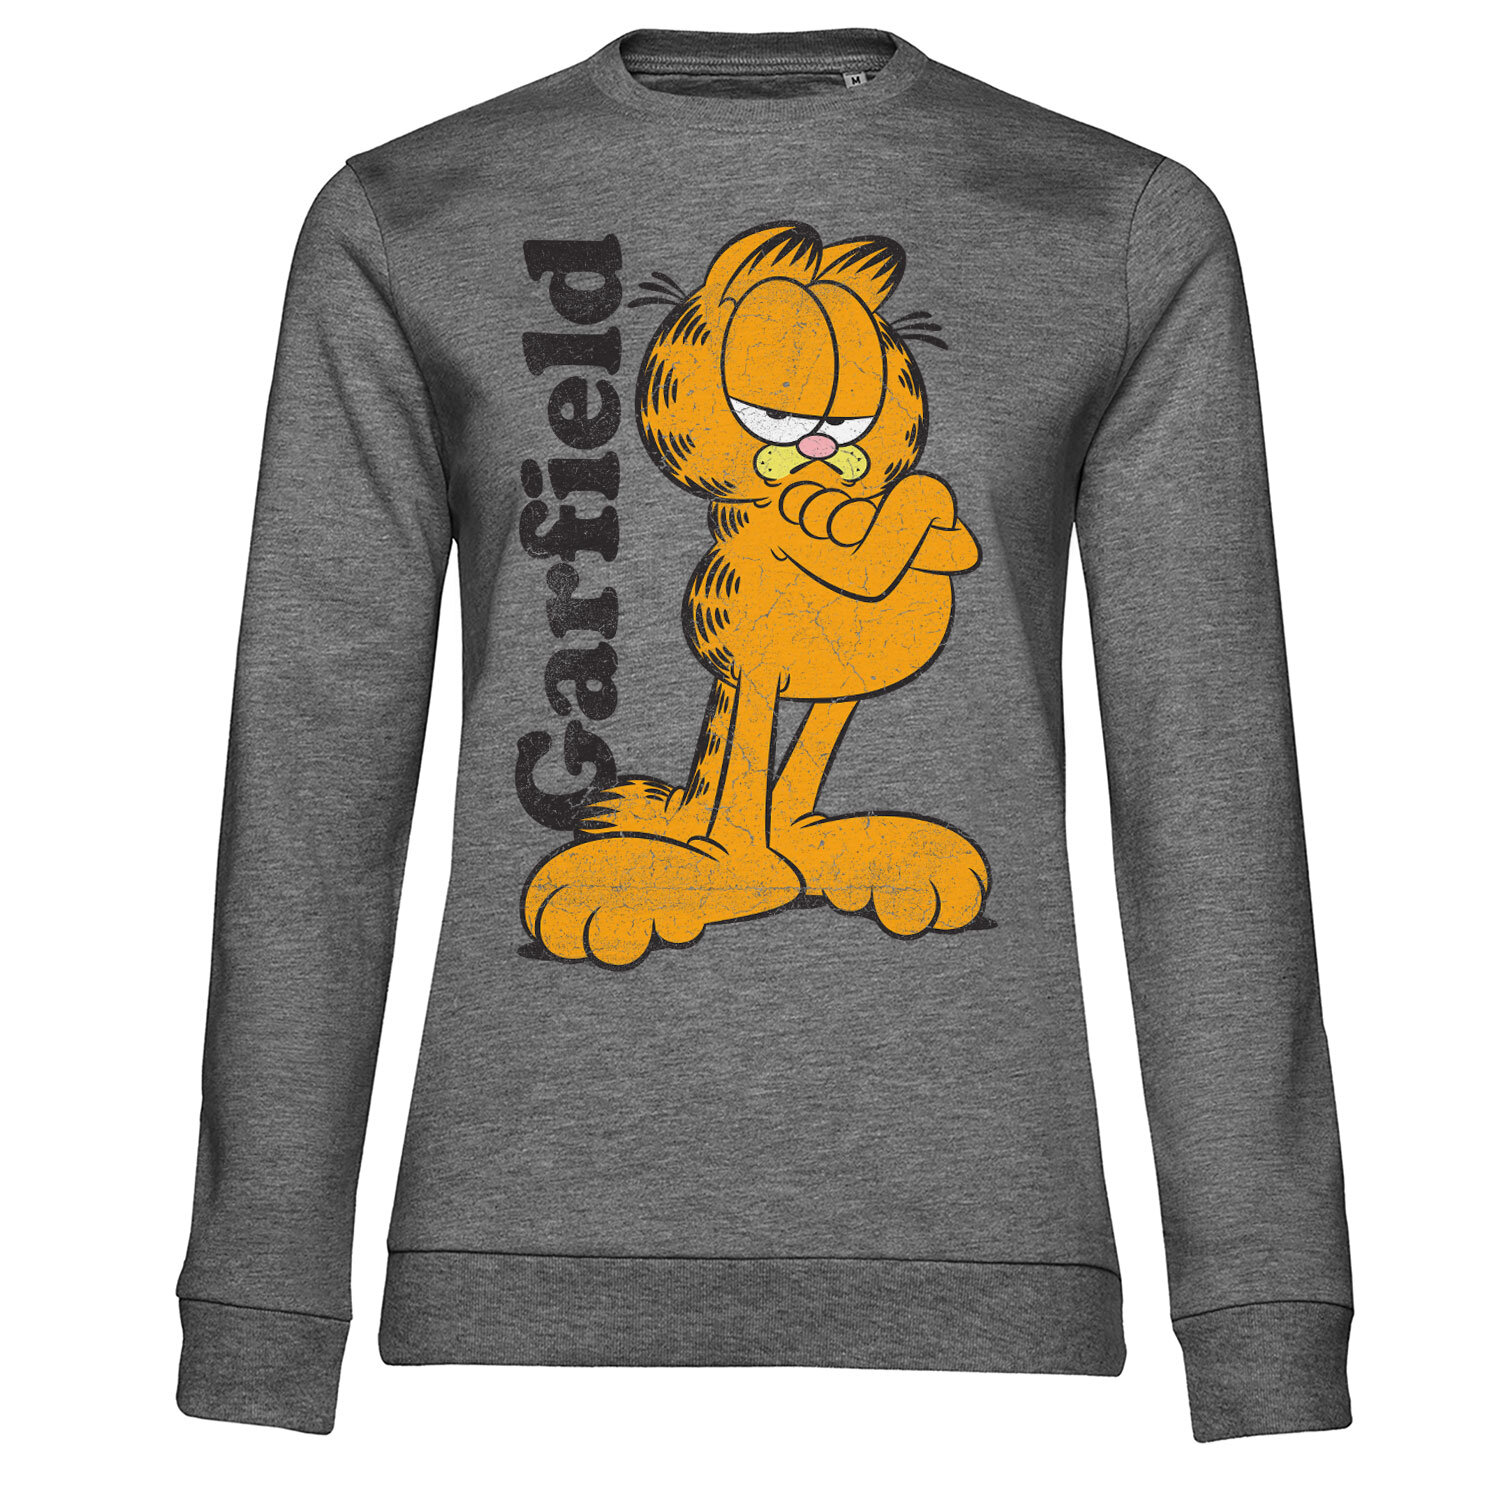 Garfield Girly Sweatshirt